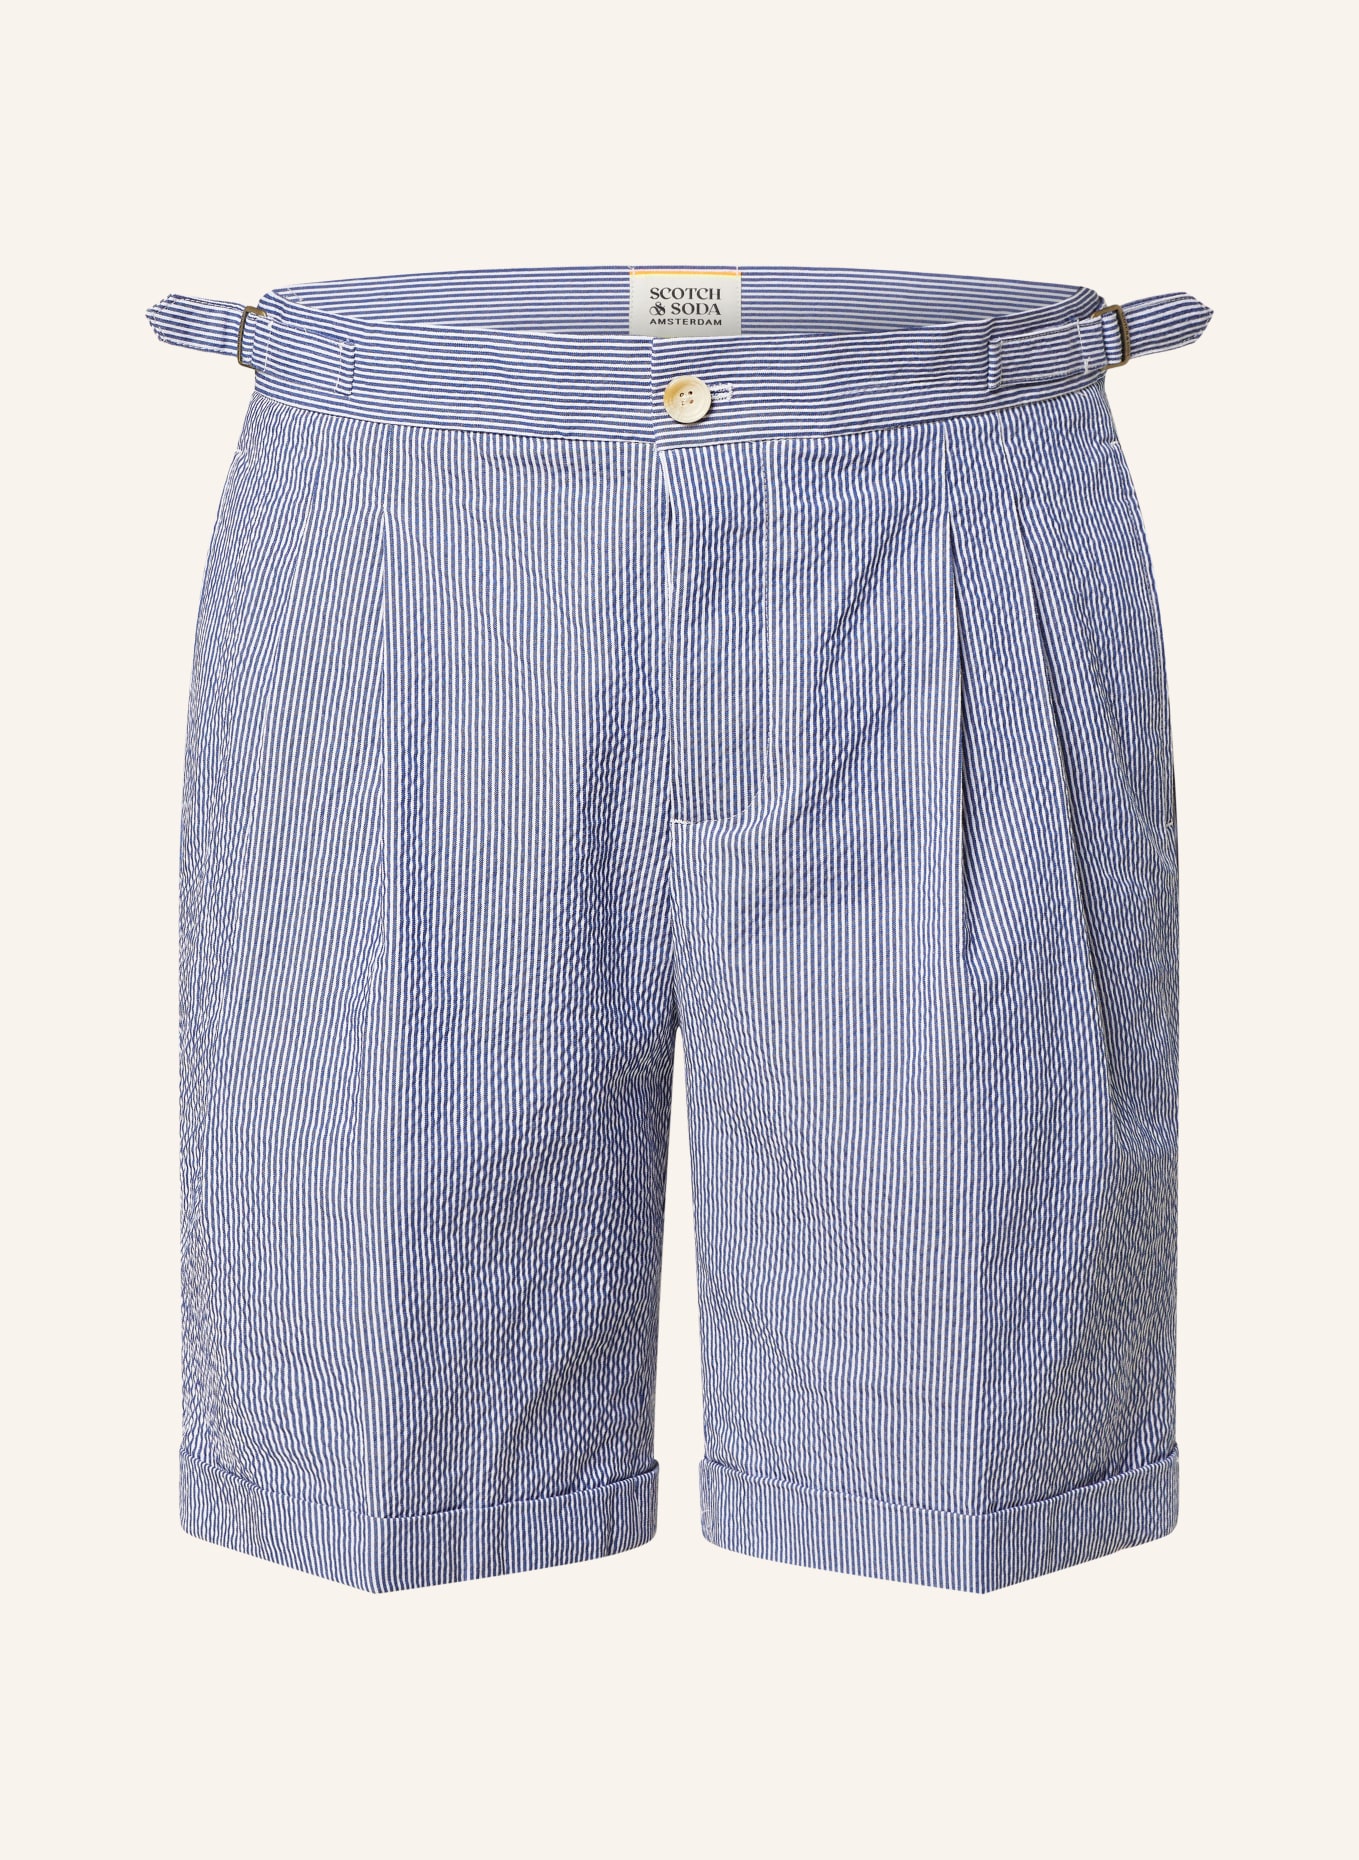 SCOTCH & SODA Shorts TWILT Loose Fit, Farbe: WEISS/ BLAU (Bild 1)